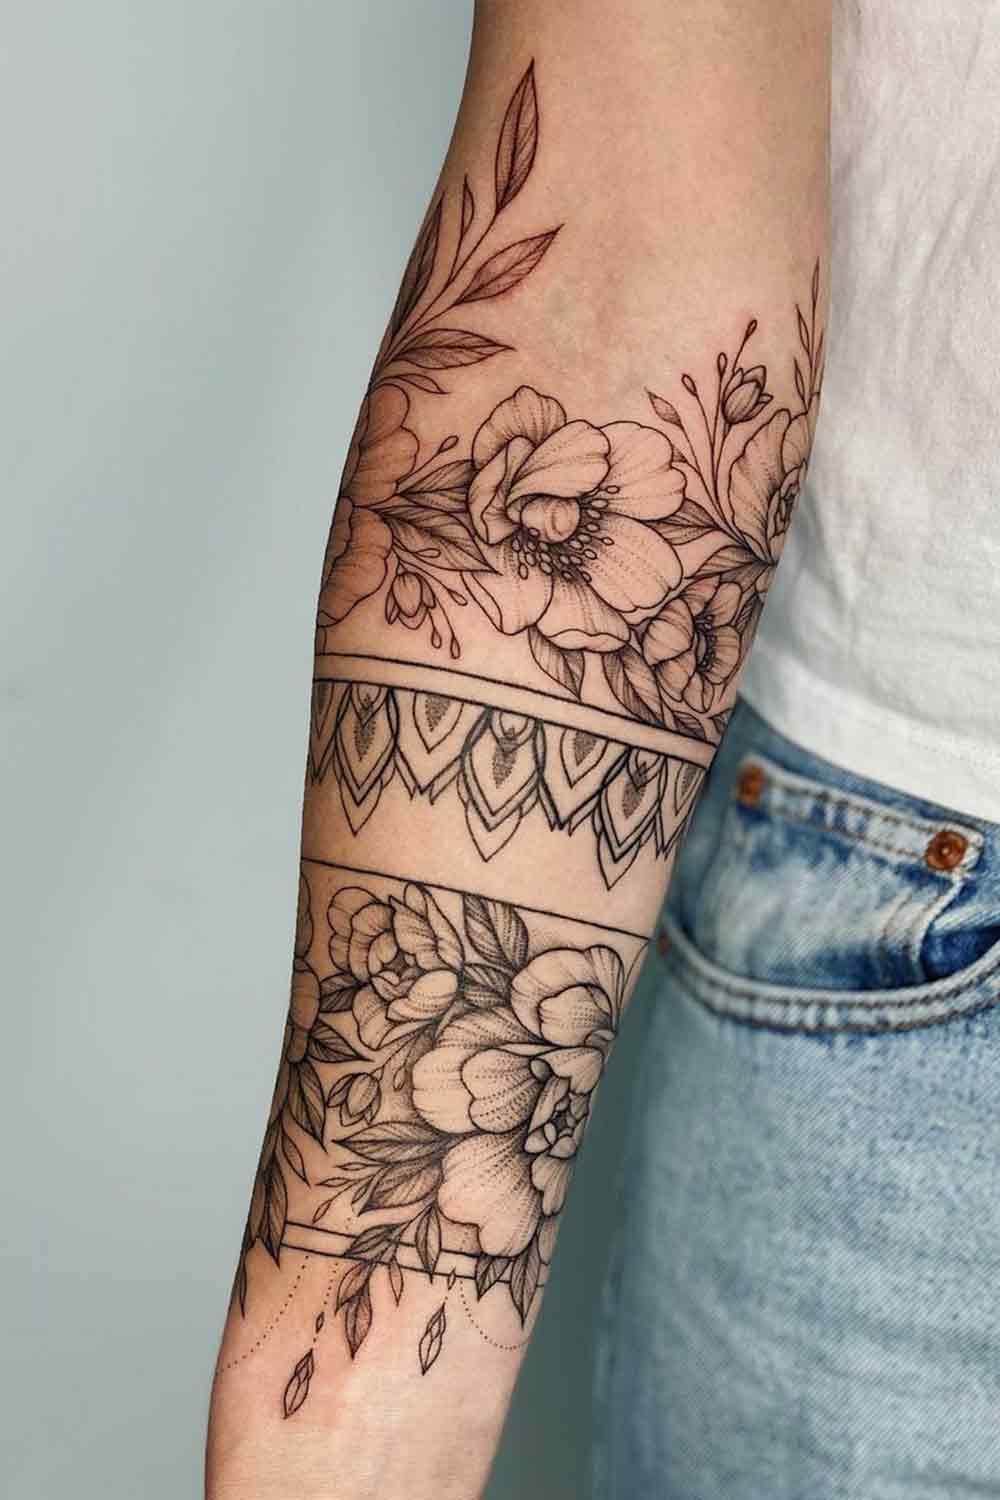 tatuagem-floral-no-antebraco-2 